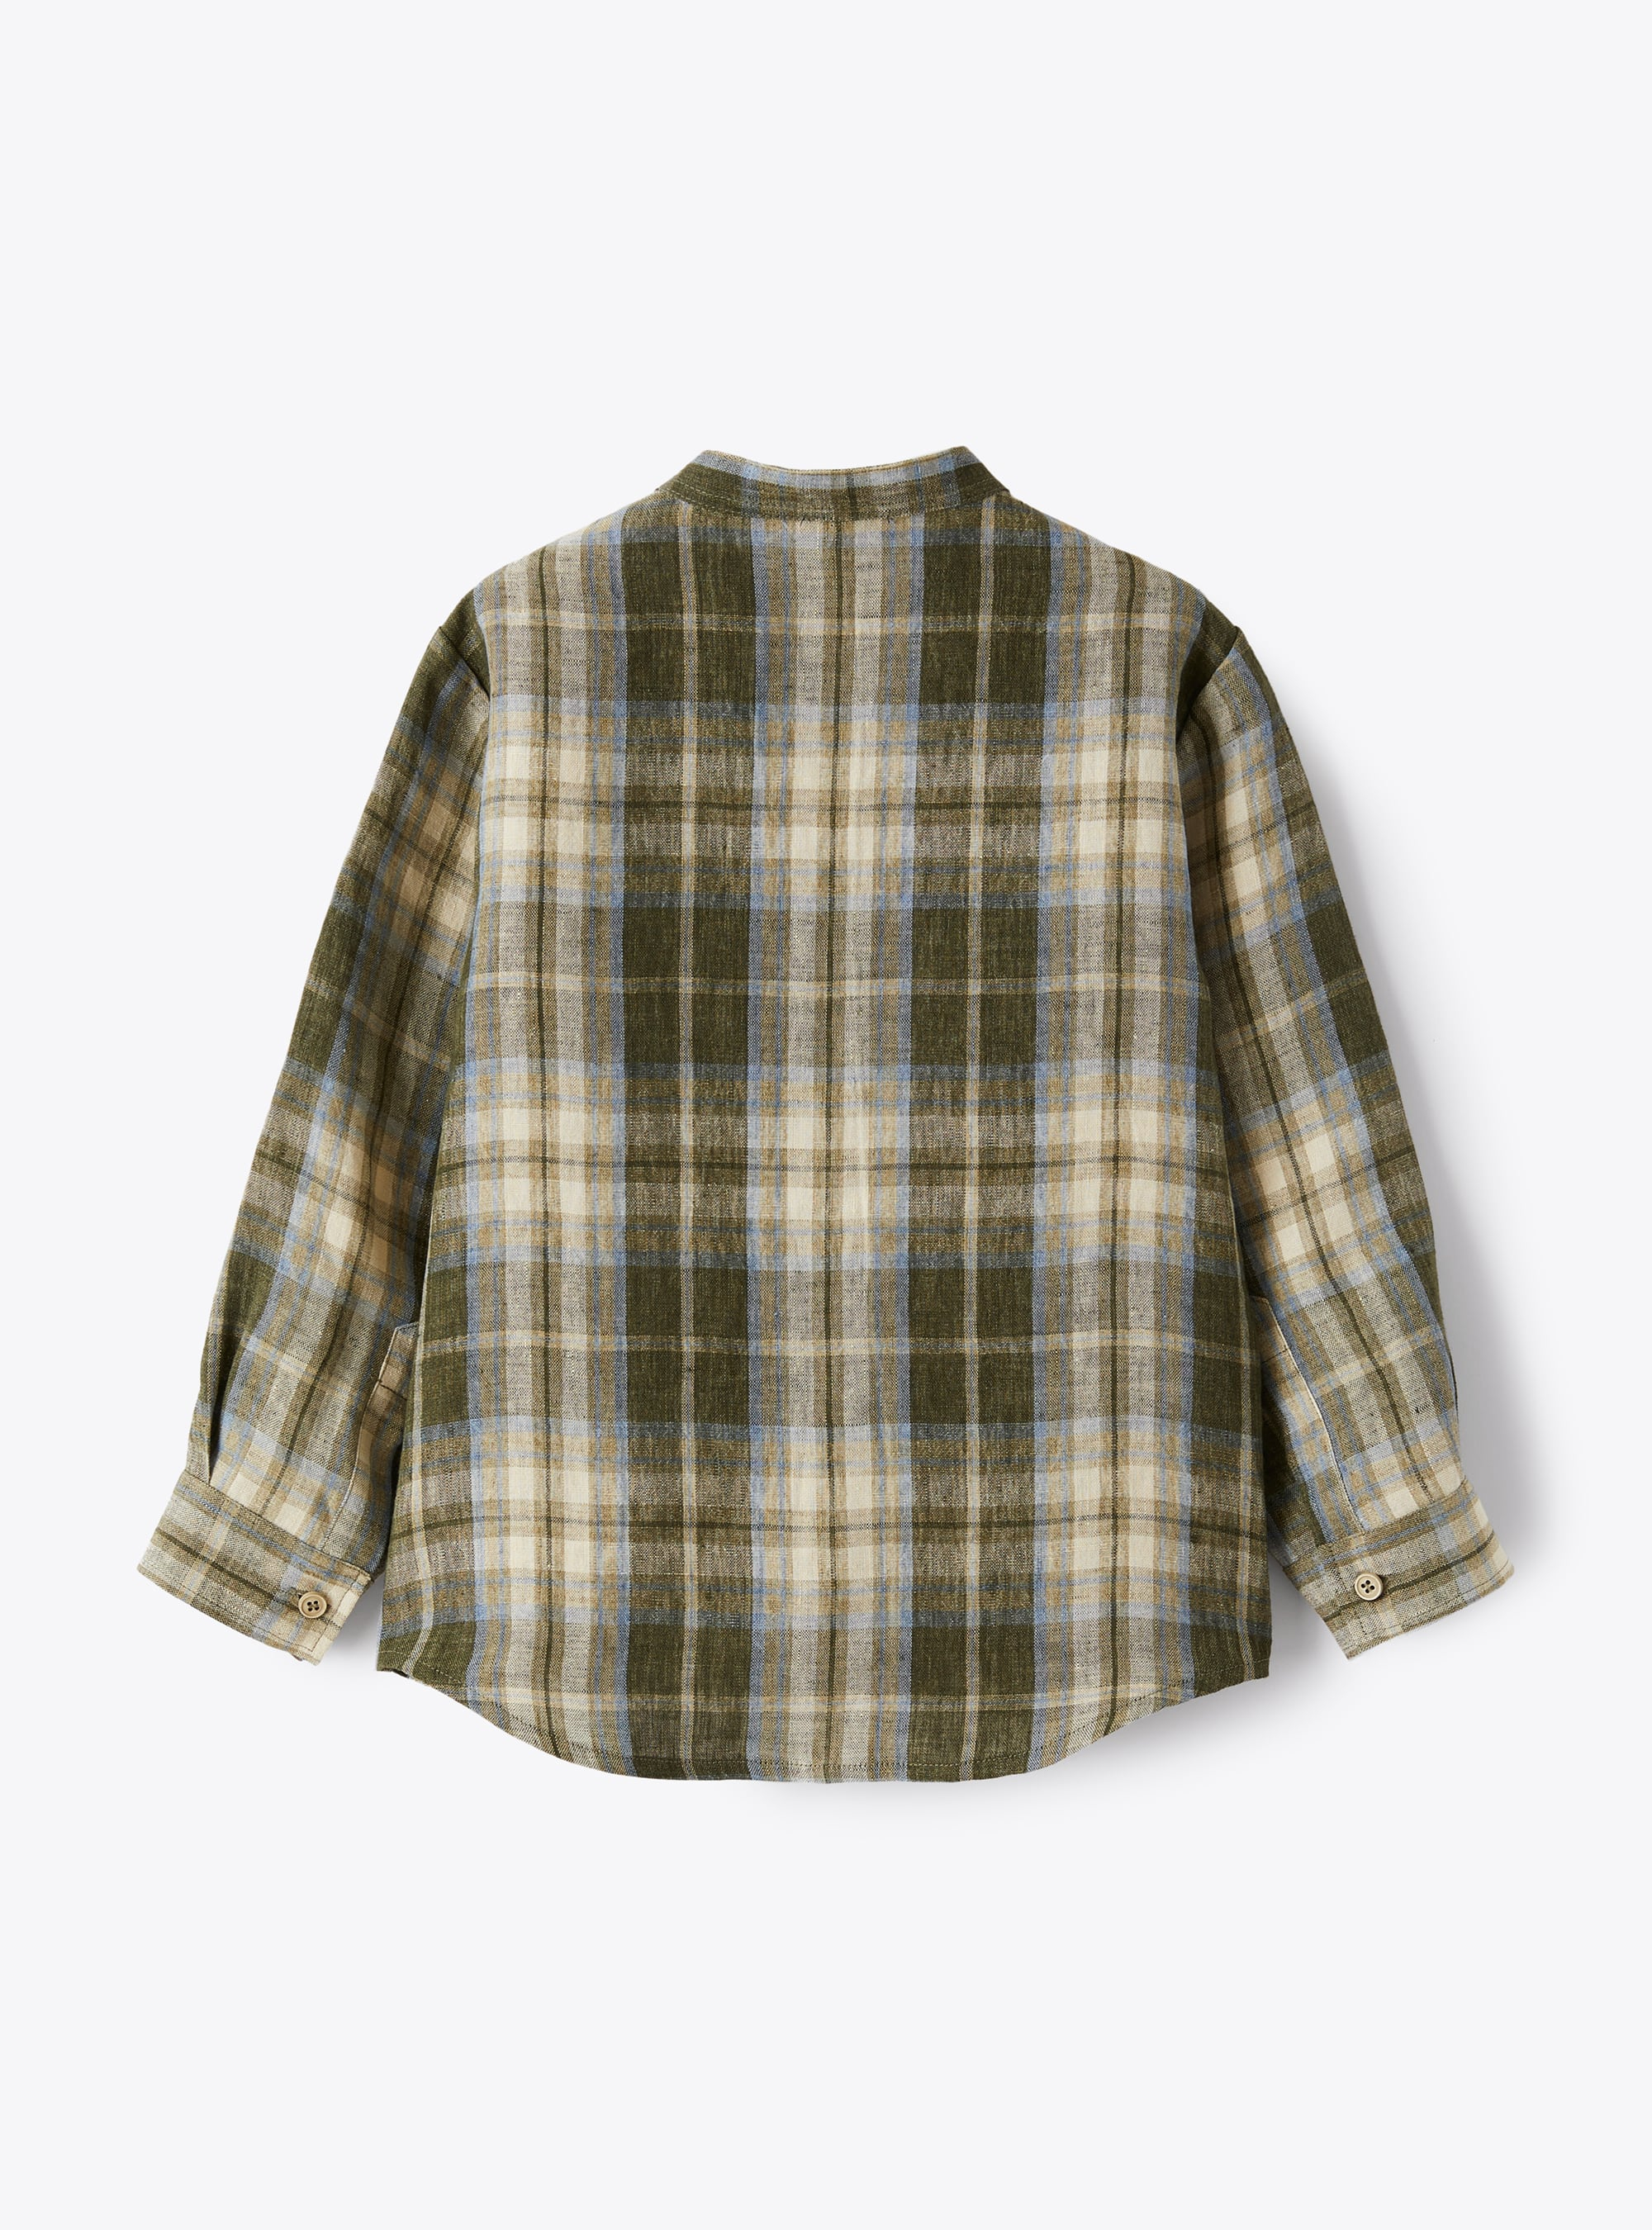 Mandarin-collar shirt in madras-patterned linen - Green | Il Gufo